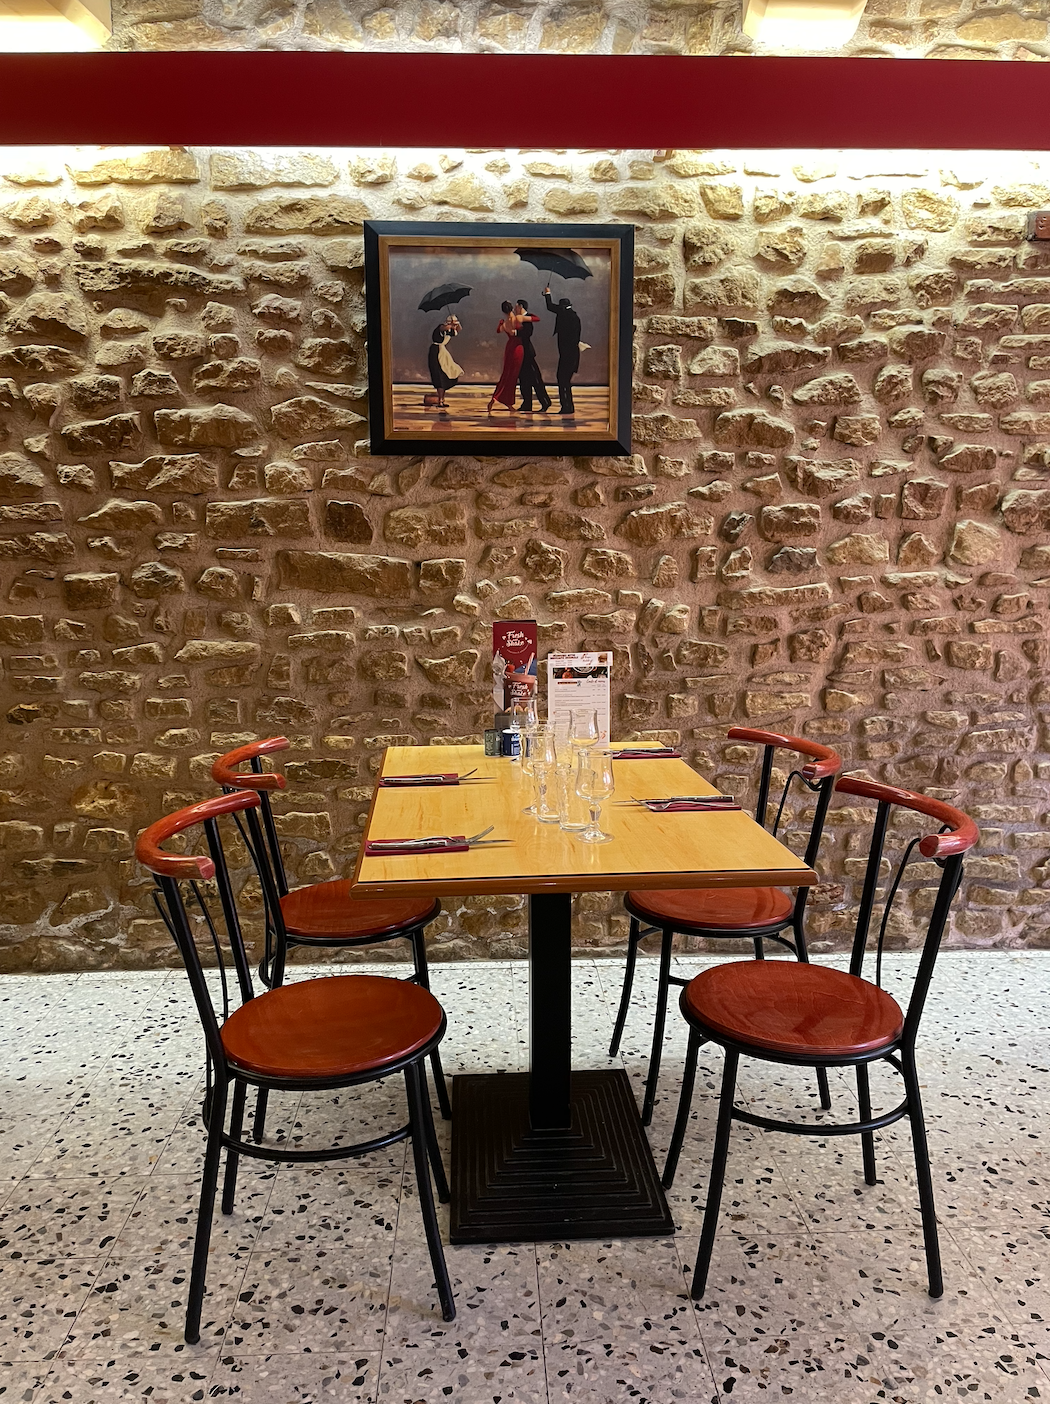 Table à l'intérieur du restaurant dressée pour le repas du midi avec mur en pierres dorées et tableau représentant un couple qui danse